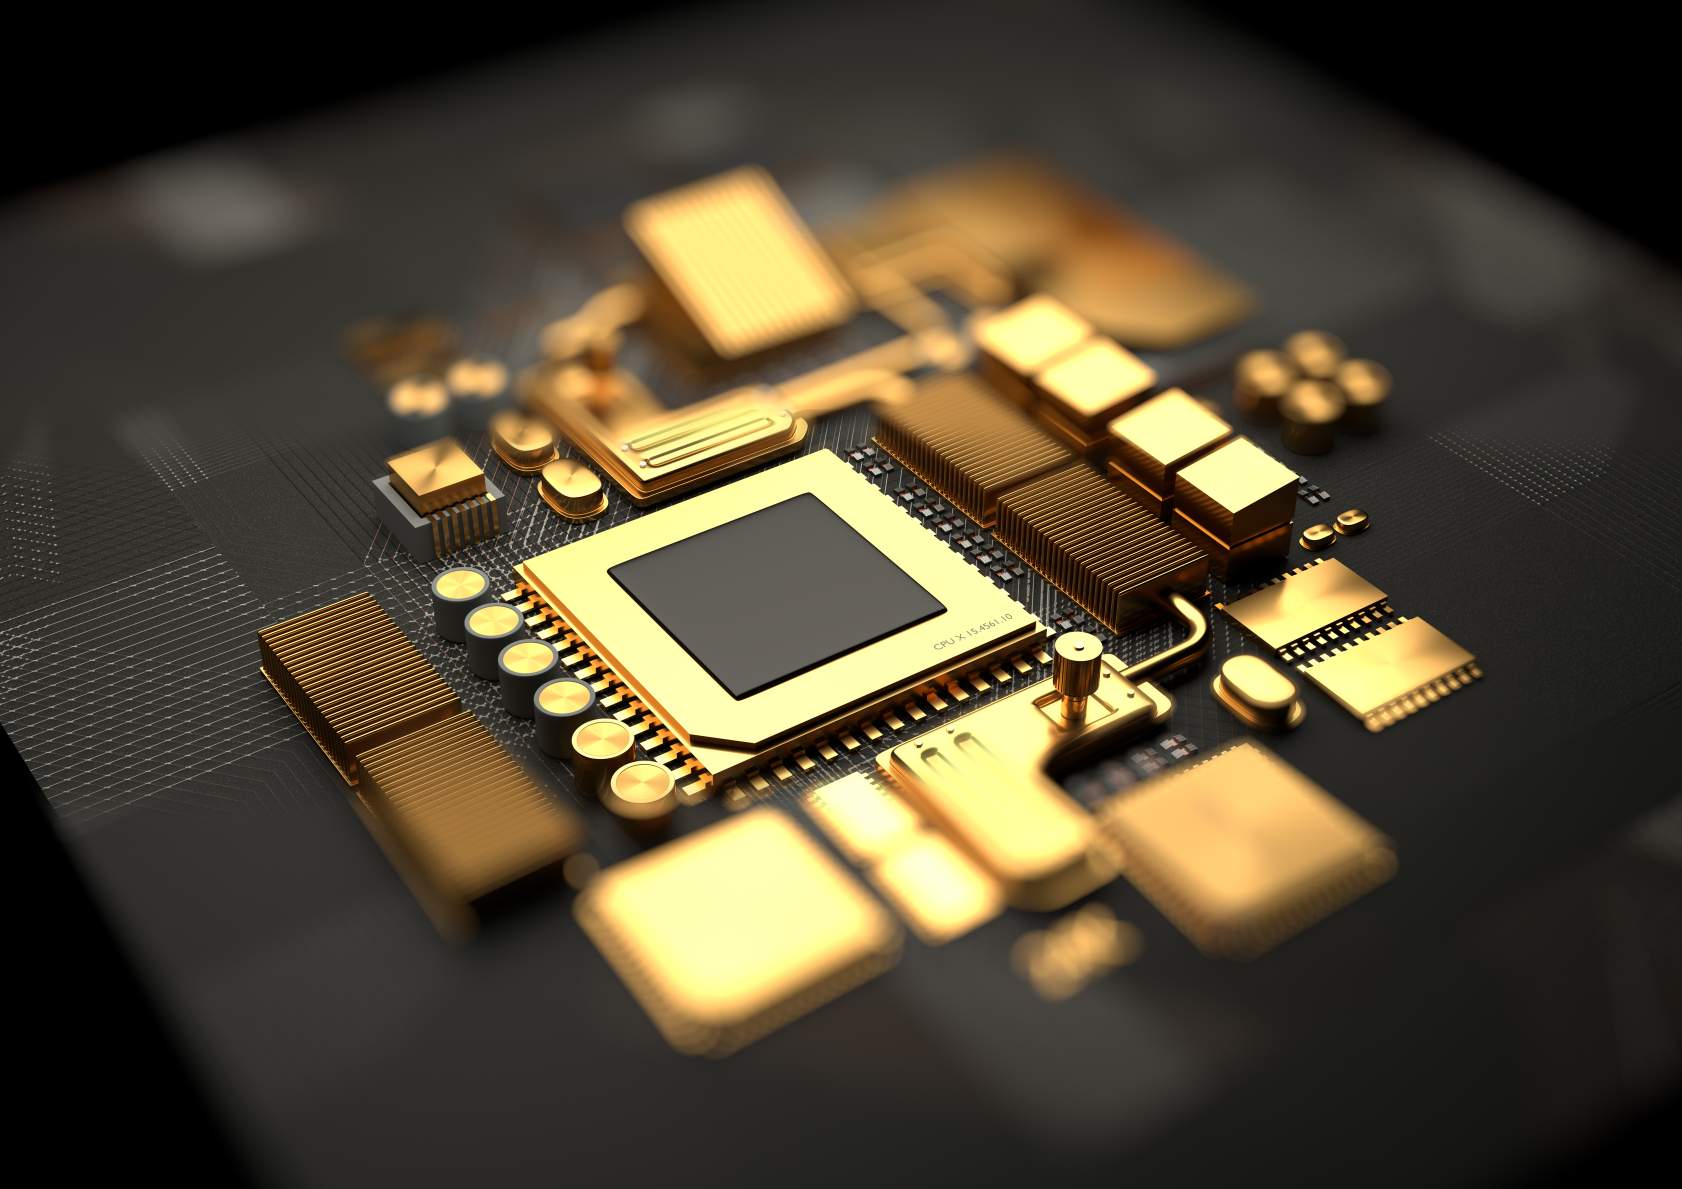 ოქროსგან დამზადებული CPU და დედაპლატის ჩიპსეტის კომპონენტების კონცეფციის სურათი. © გამოსახულების კრედიტი: Solarseven | ლიცენზირებულია DreamsTime.com-დან (სარედაქციო/კომერციული გამოყენების საფონდო ფოტო)